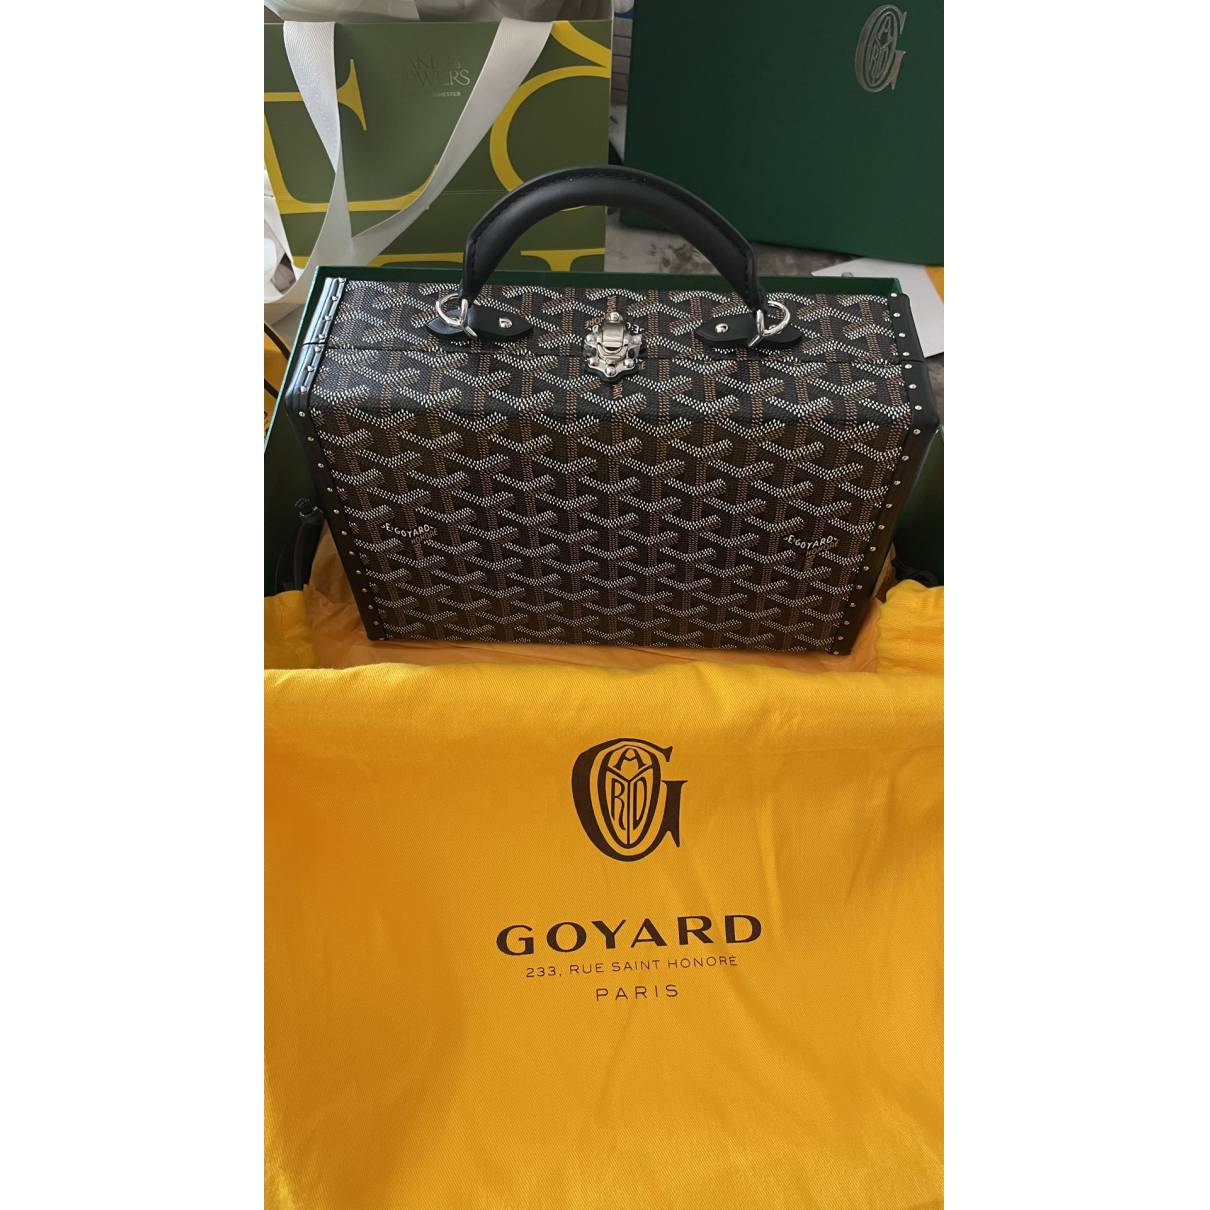 GOYARD Goyardine Grand Hotel Trunk Bag Black 1103245